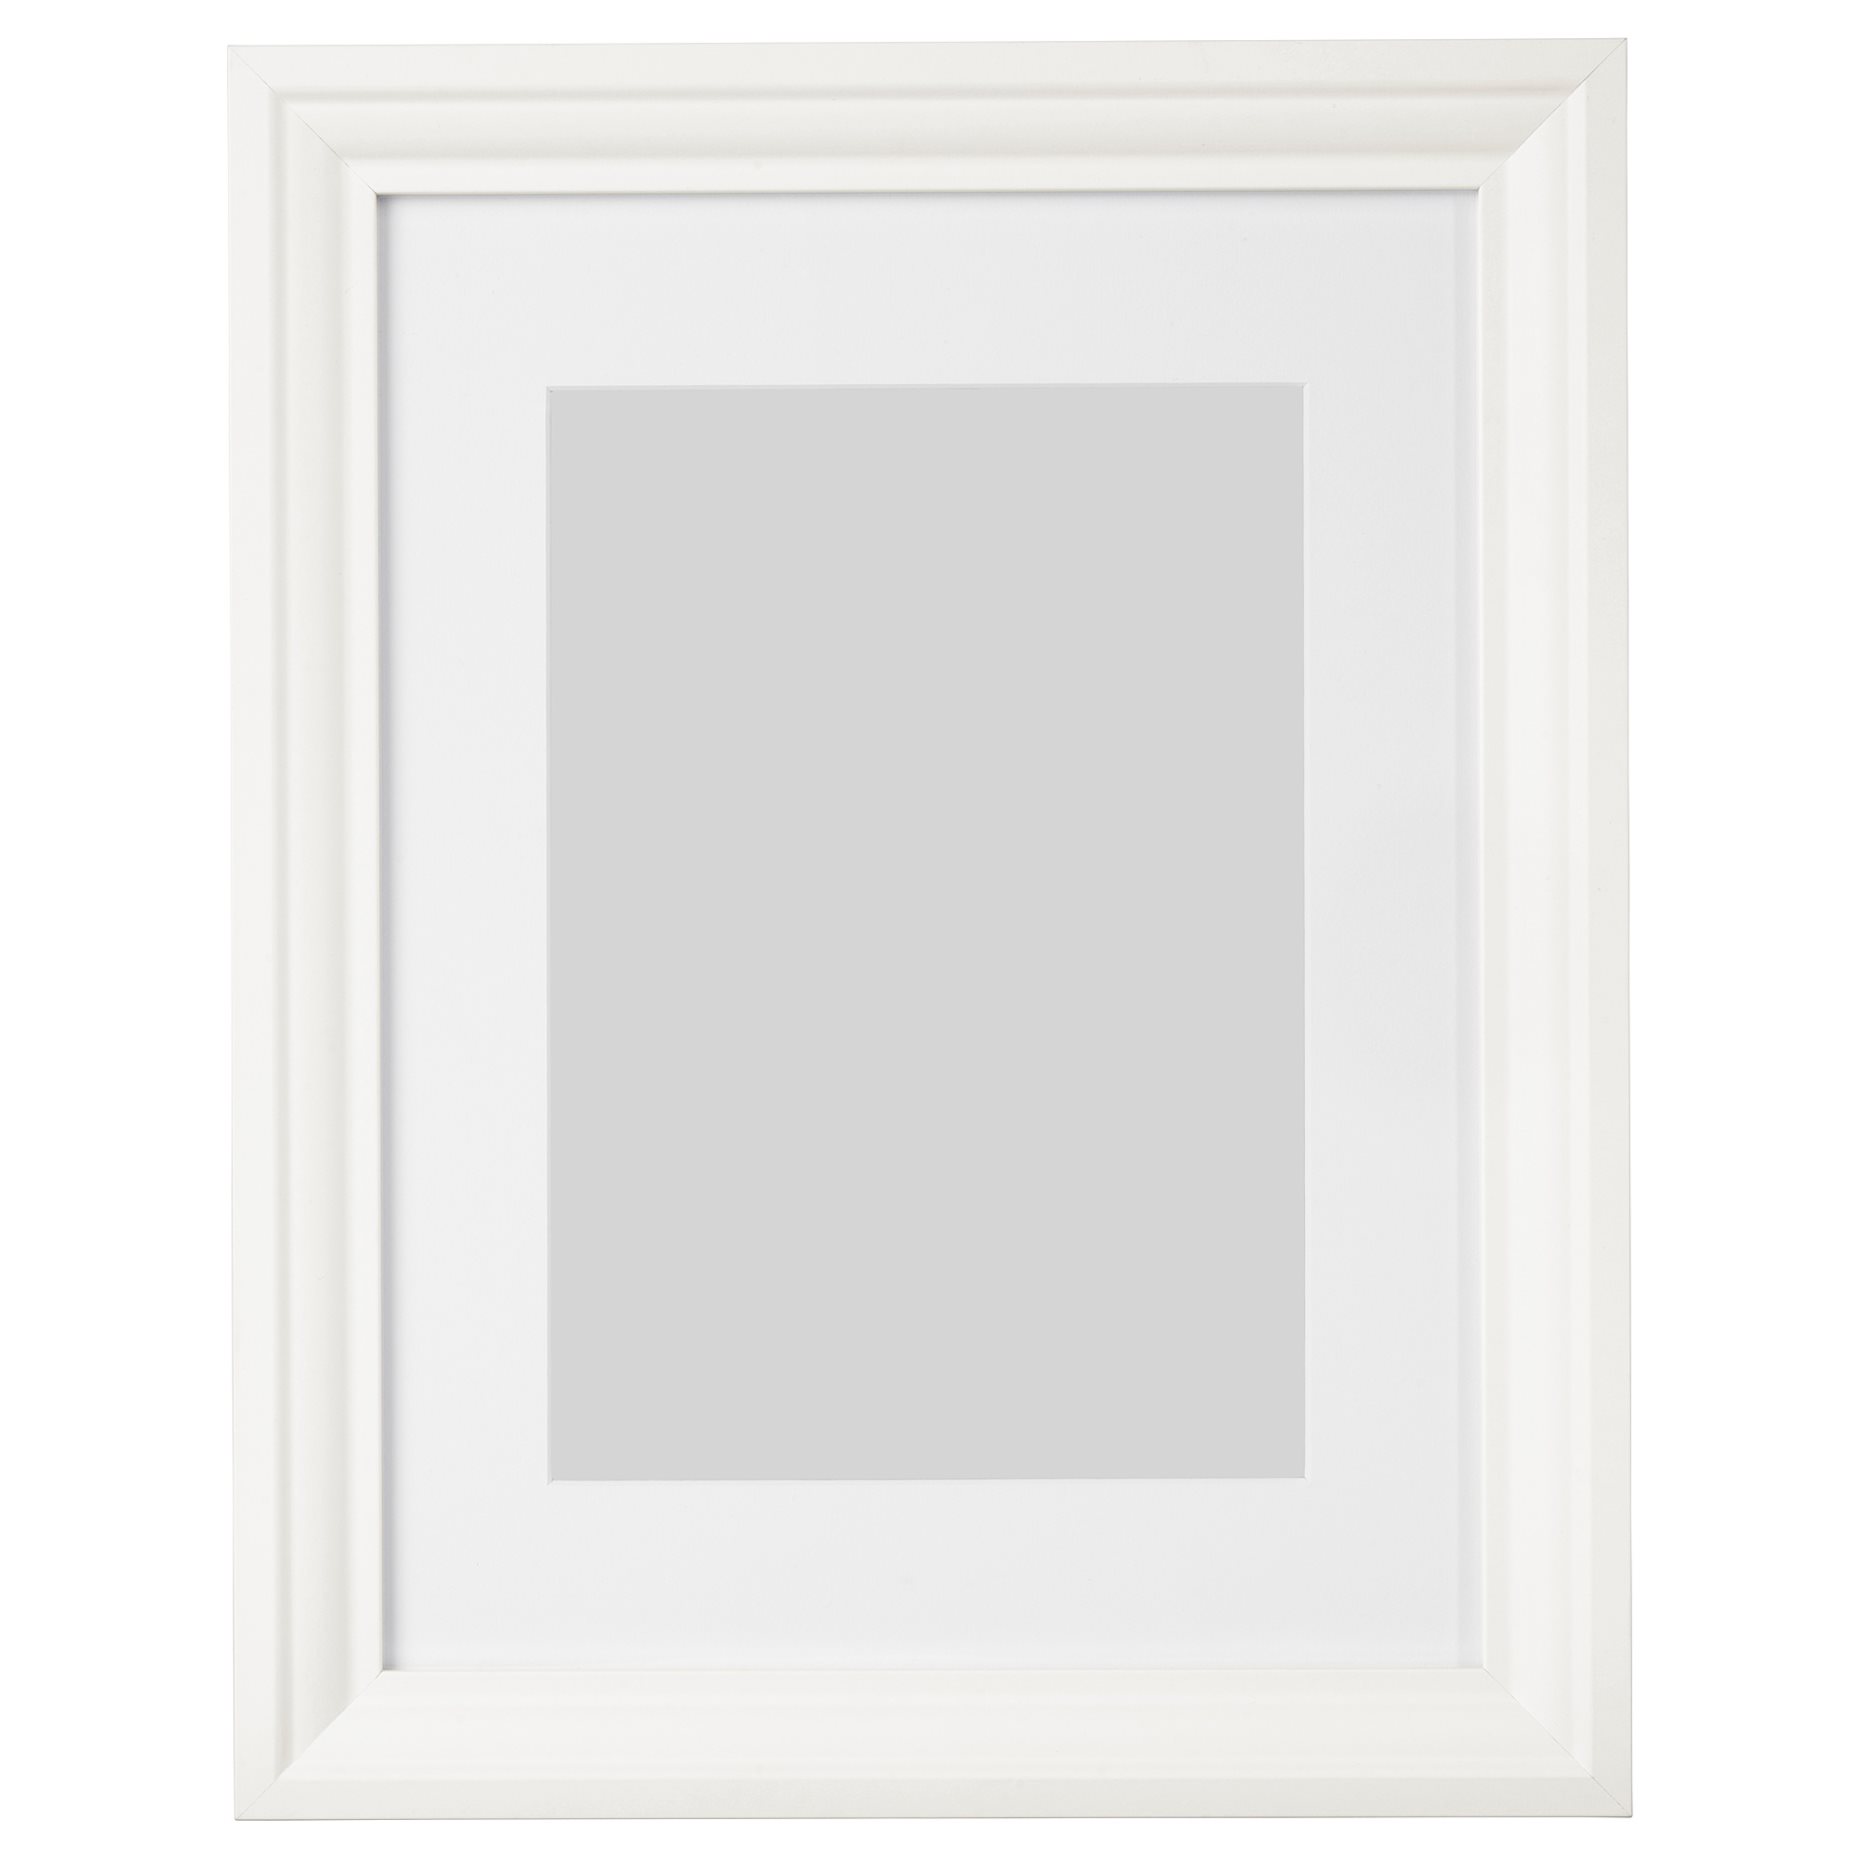 EDSBRUK, frame, 30x40 cm, 304.273.22